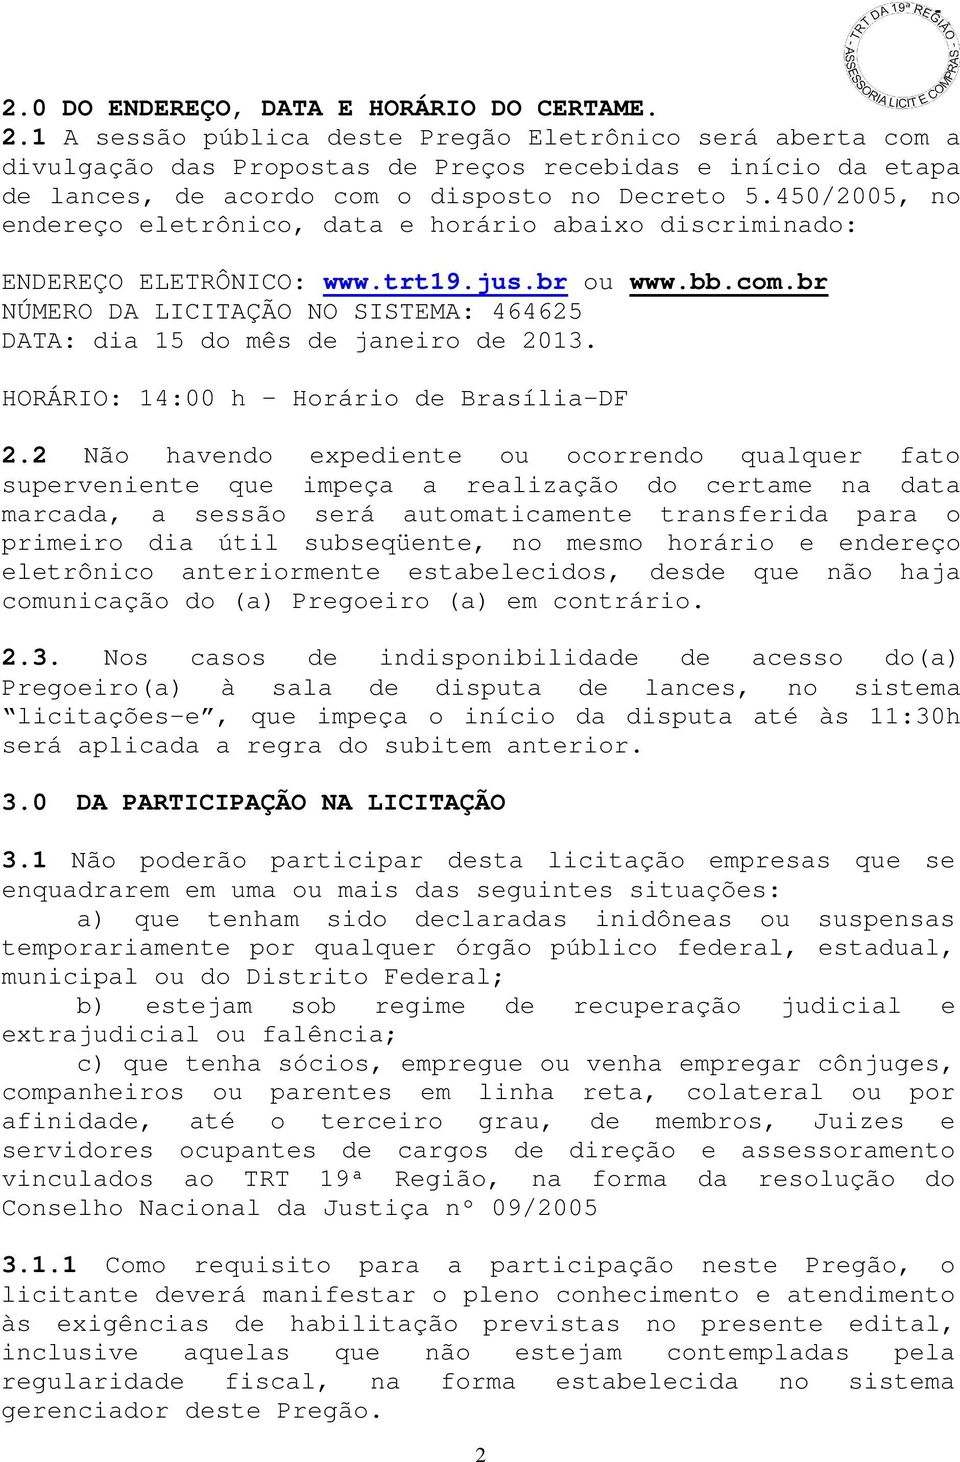 450/2005, no endereço eletrônico, data e horário abaixo discriminado: ENDEREÇO ELETRÔNICO: www.trt19.jus.br ou www.bb.com.